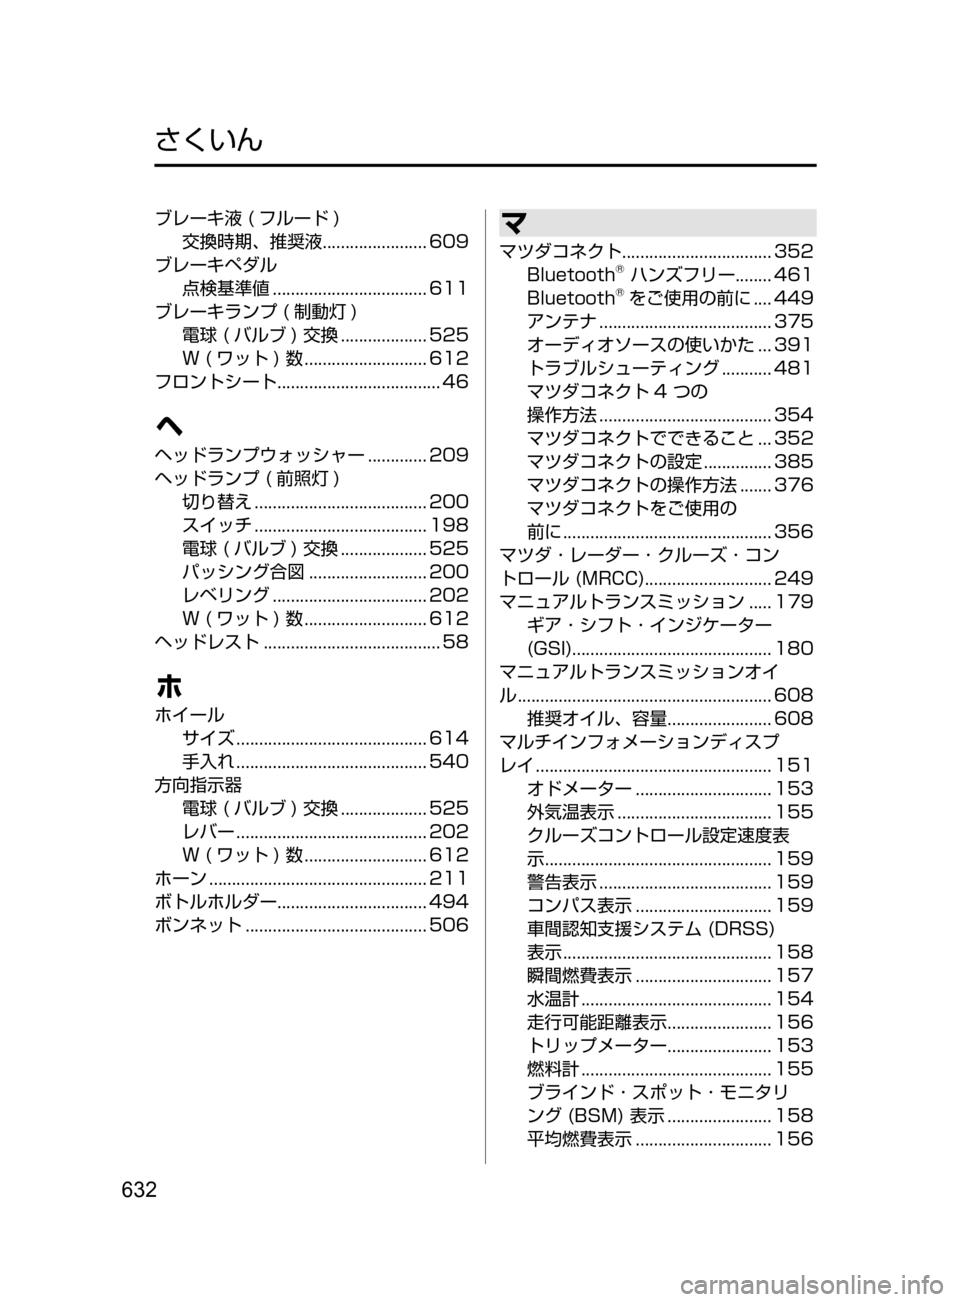 MAZDA MODEL ATENZA 2016  アテンザ｜取扱説明書 (in Japanese) 632
ブレーキ液﻿﻿( フルード )
交換時期､ 推奨液 ﻿﻿
....................... 609
ブレーキペダル 点検基準値

﻿﻿
.................................. 611
ブレーキ